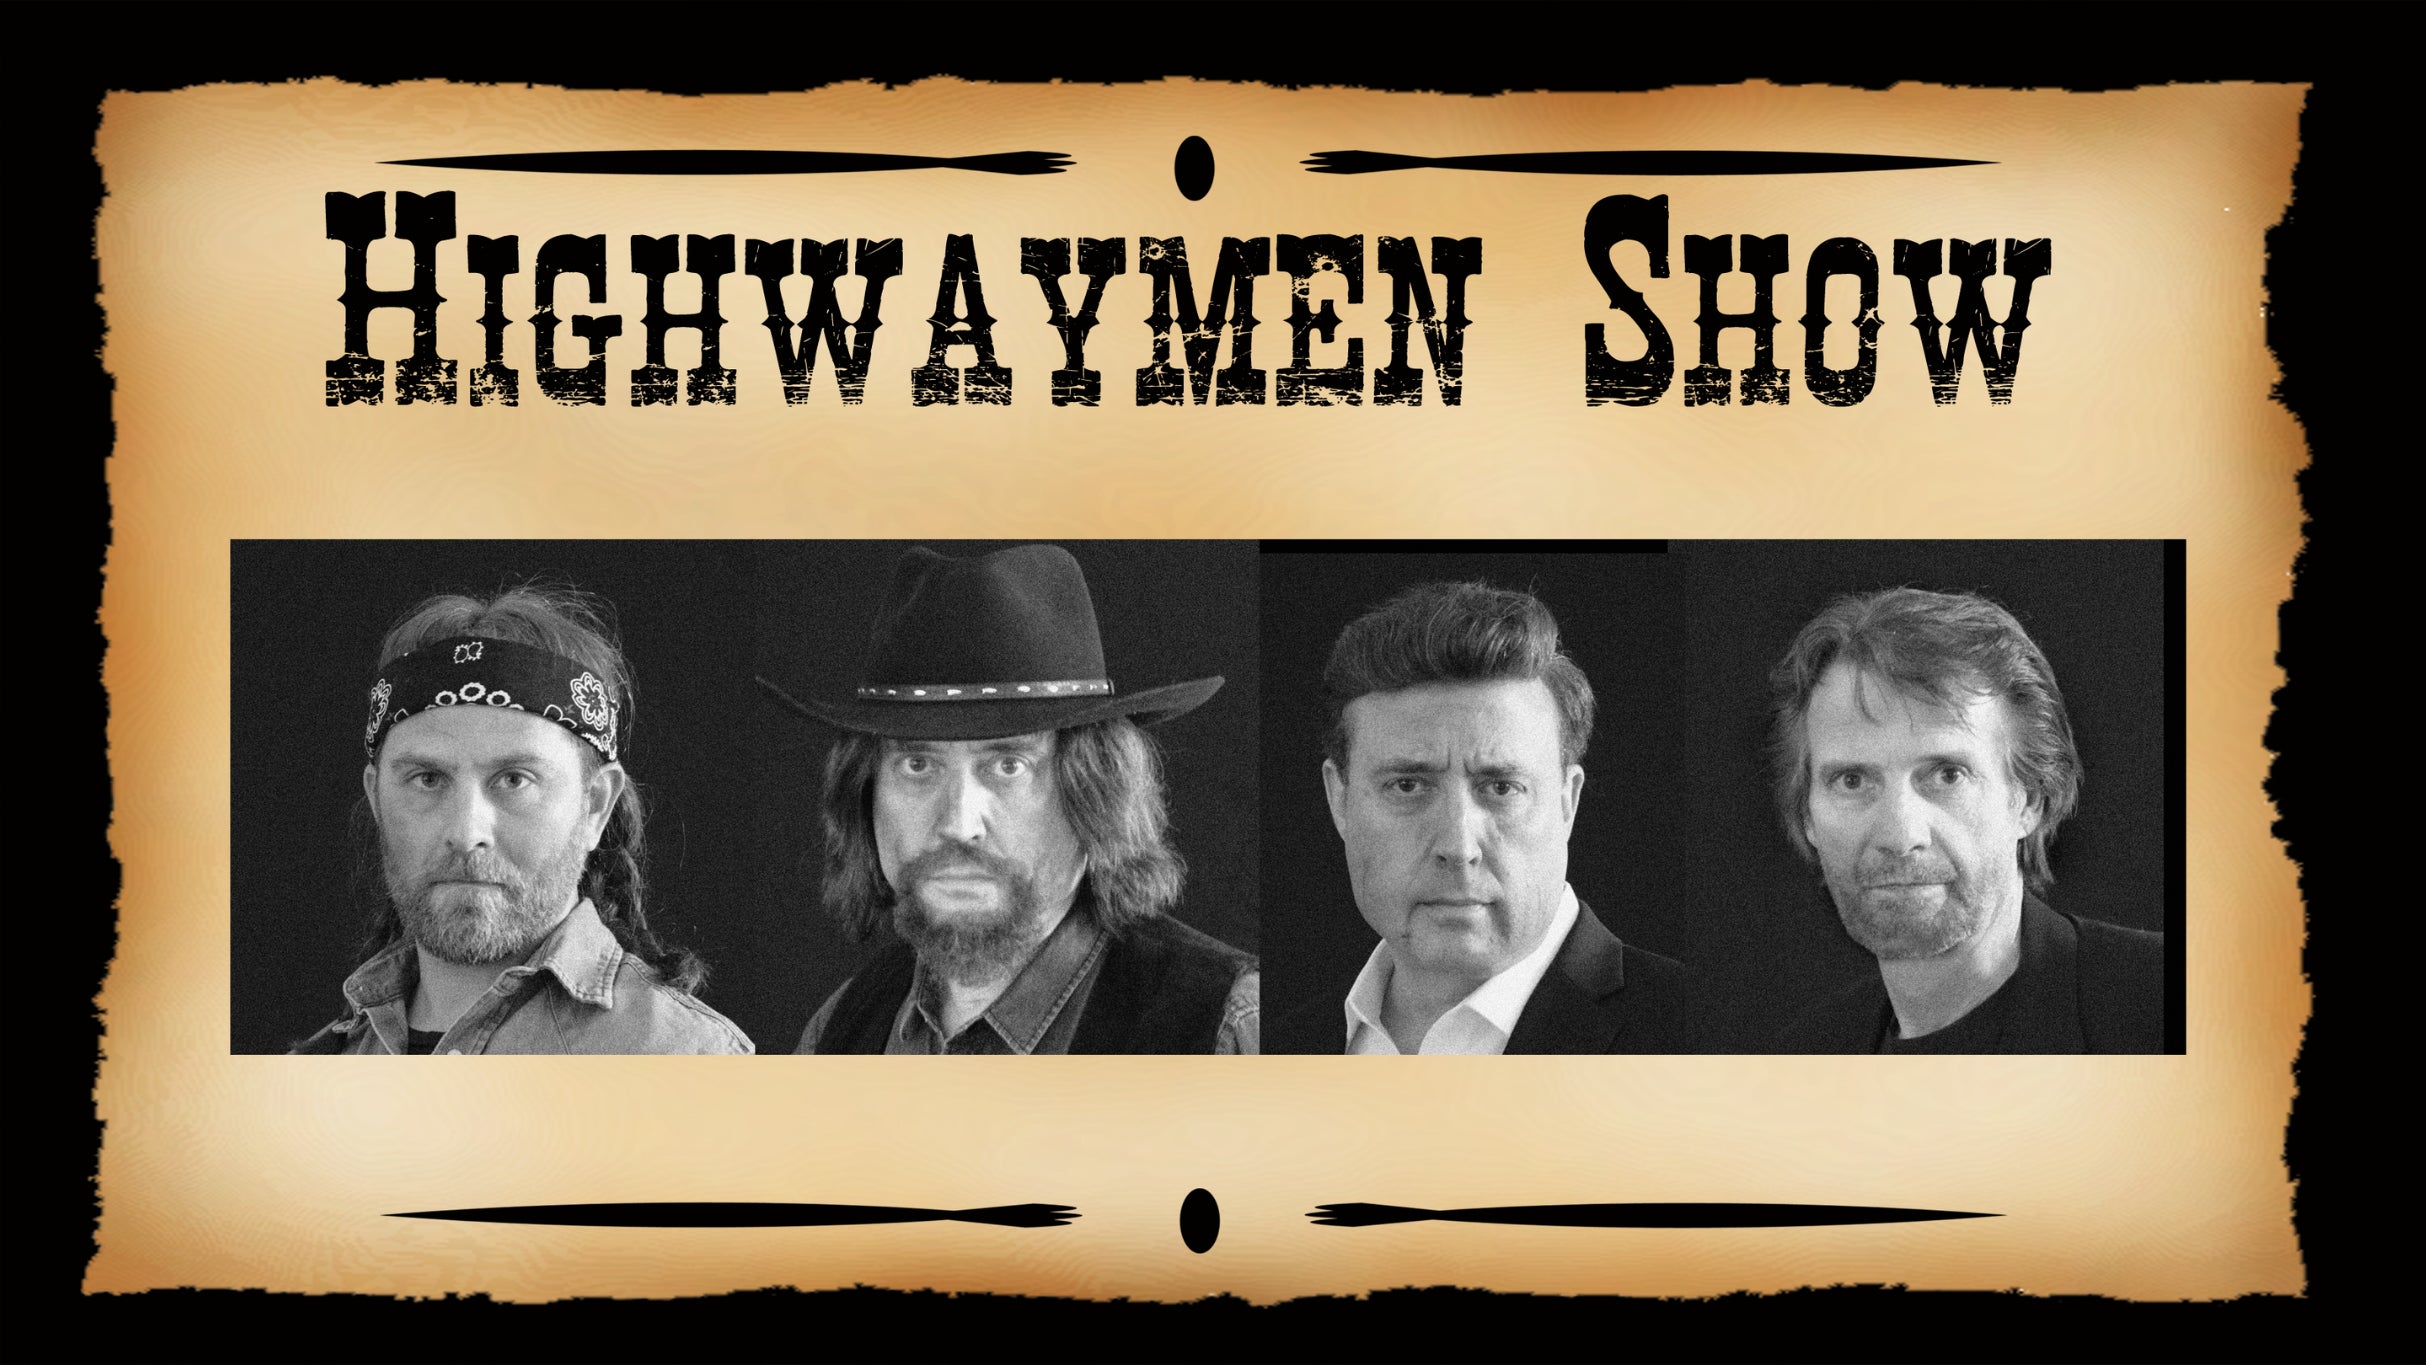 The Highwaymen Show pre-sale password for legit tickets in Waukegan